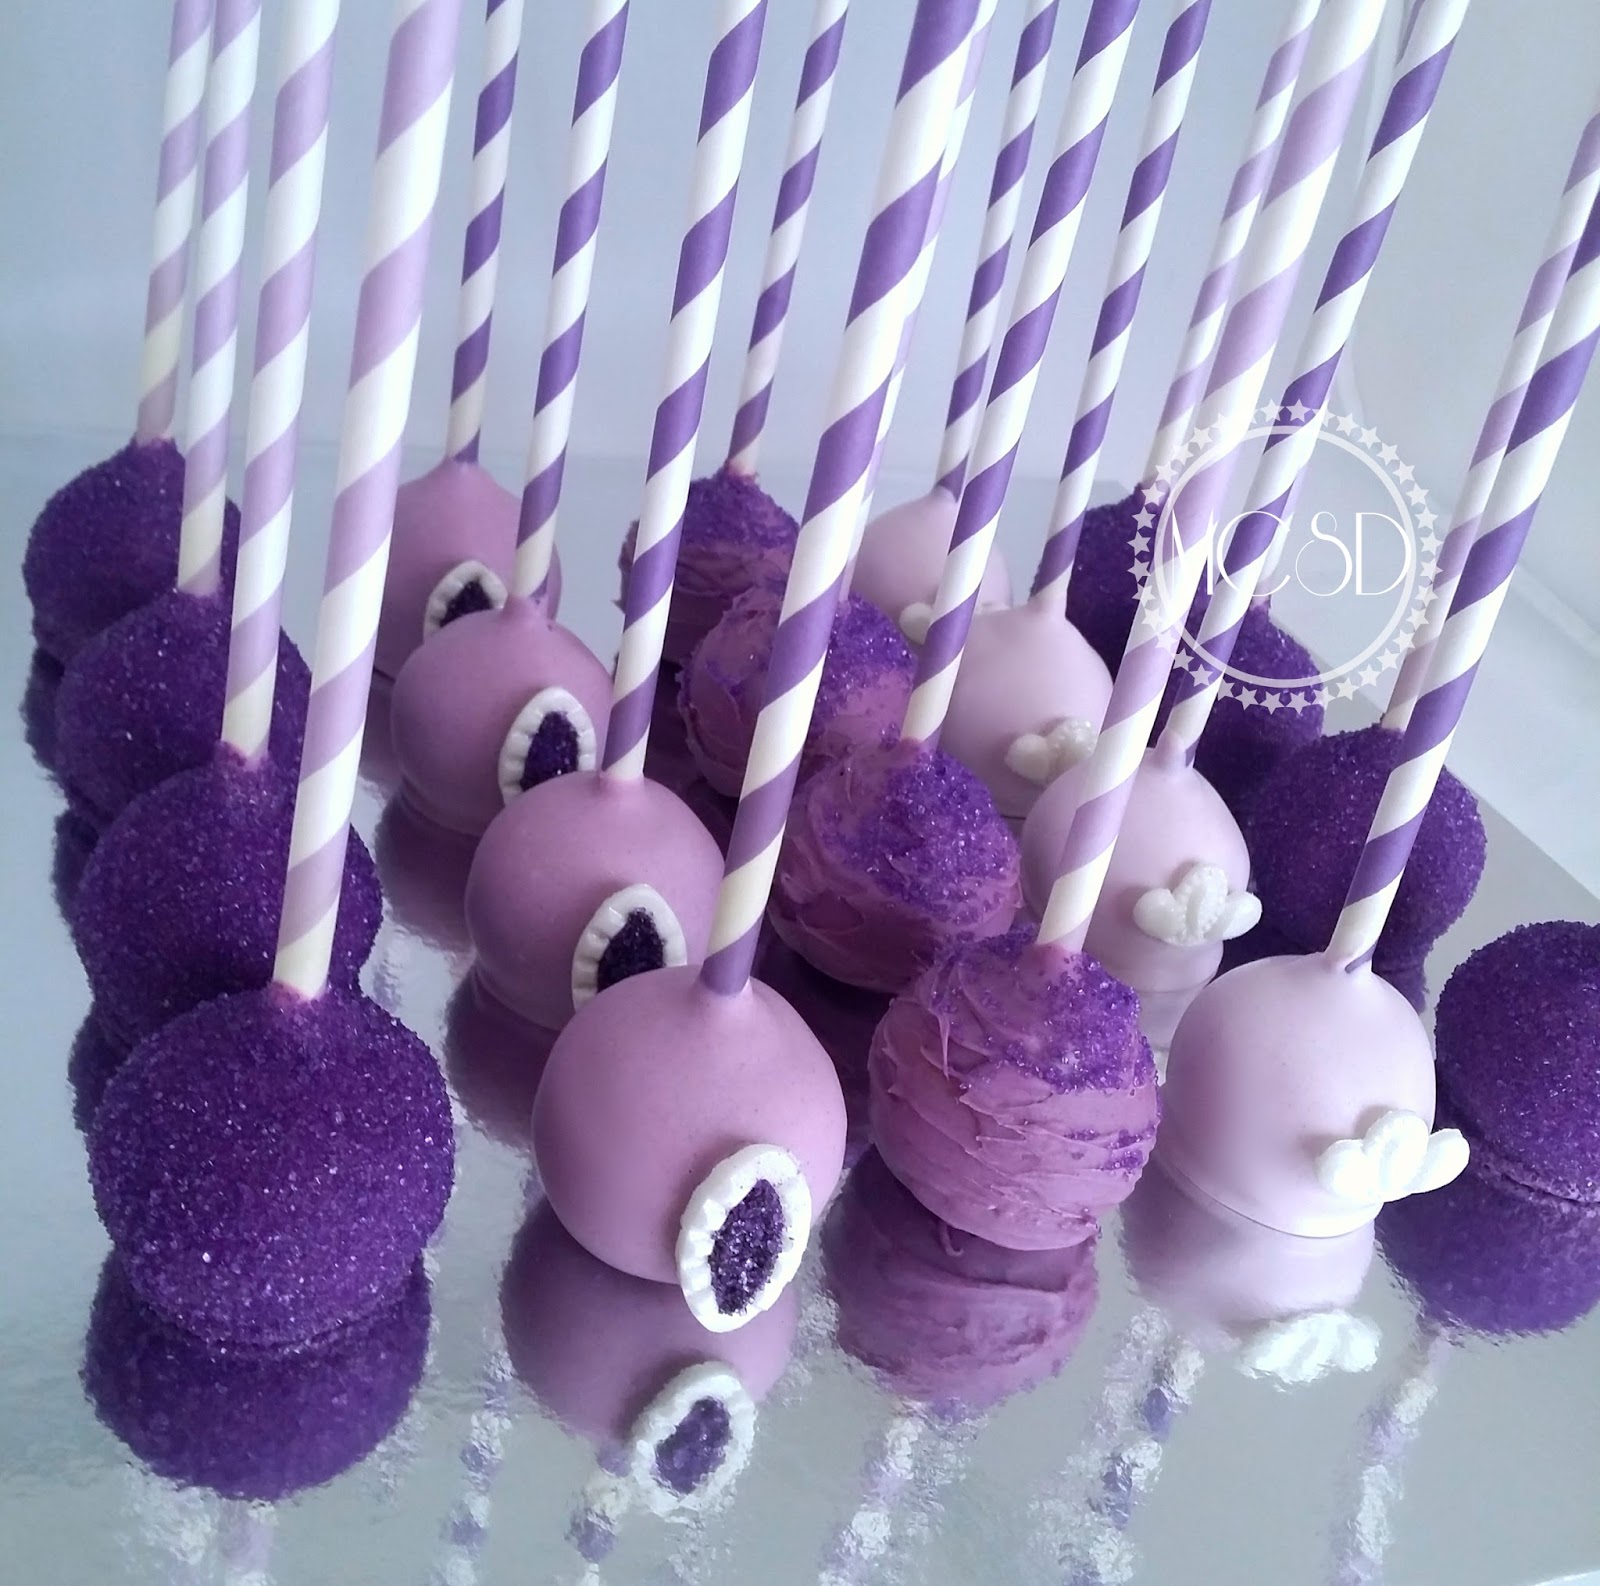 purple-sofia-birthday-cake - Mundo Ovo